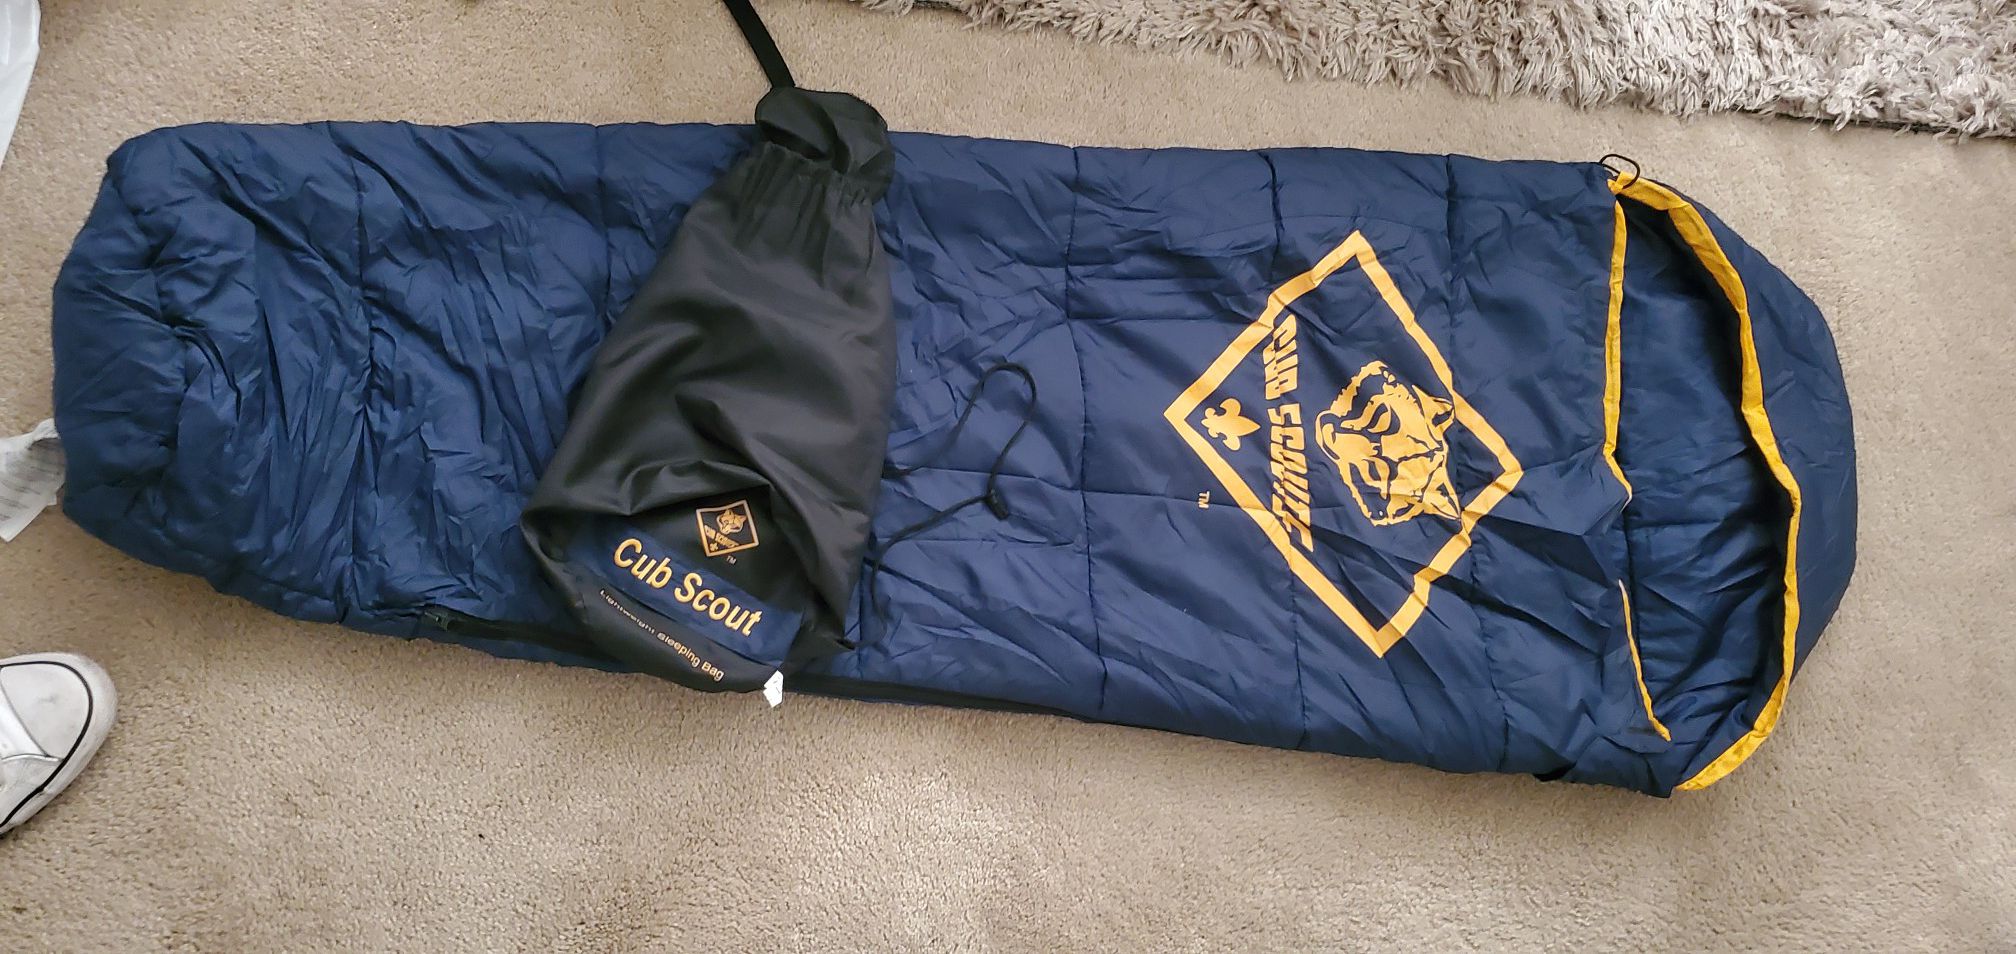 Cub scout light weight sleeping bag